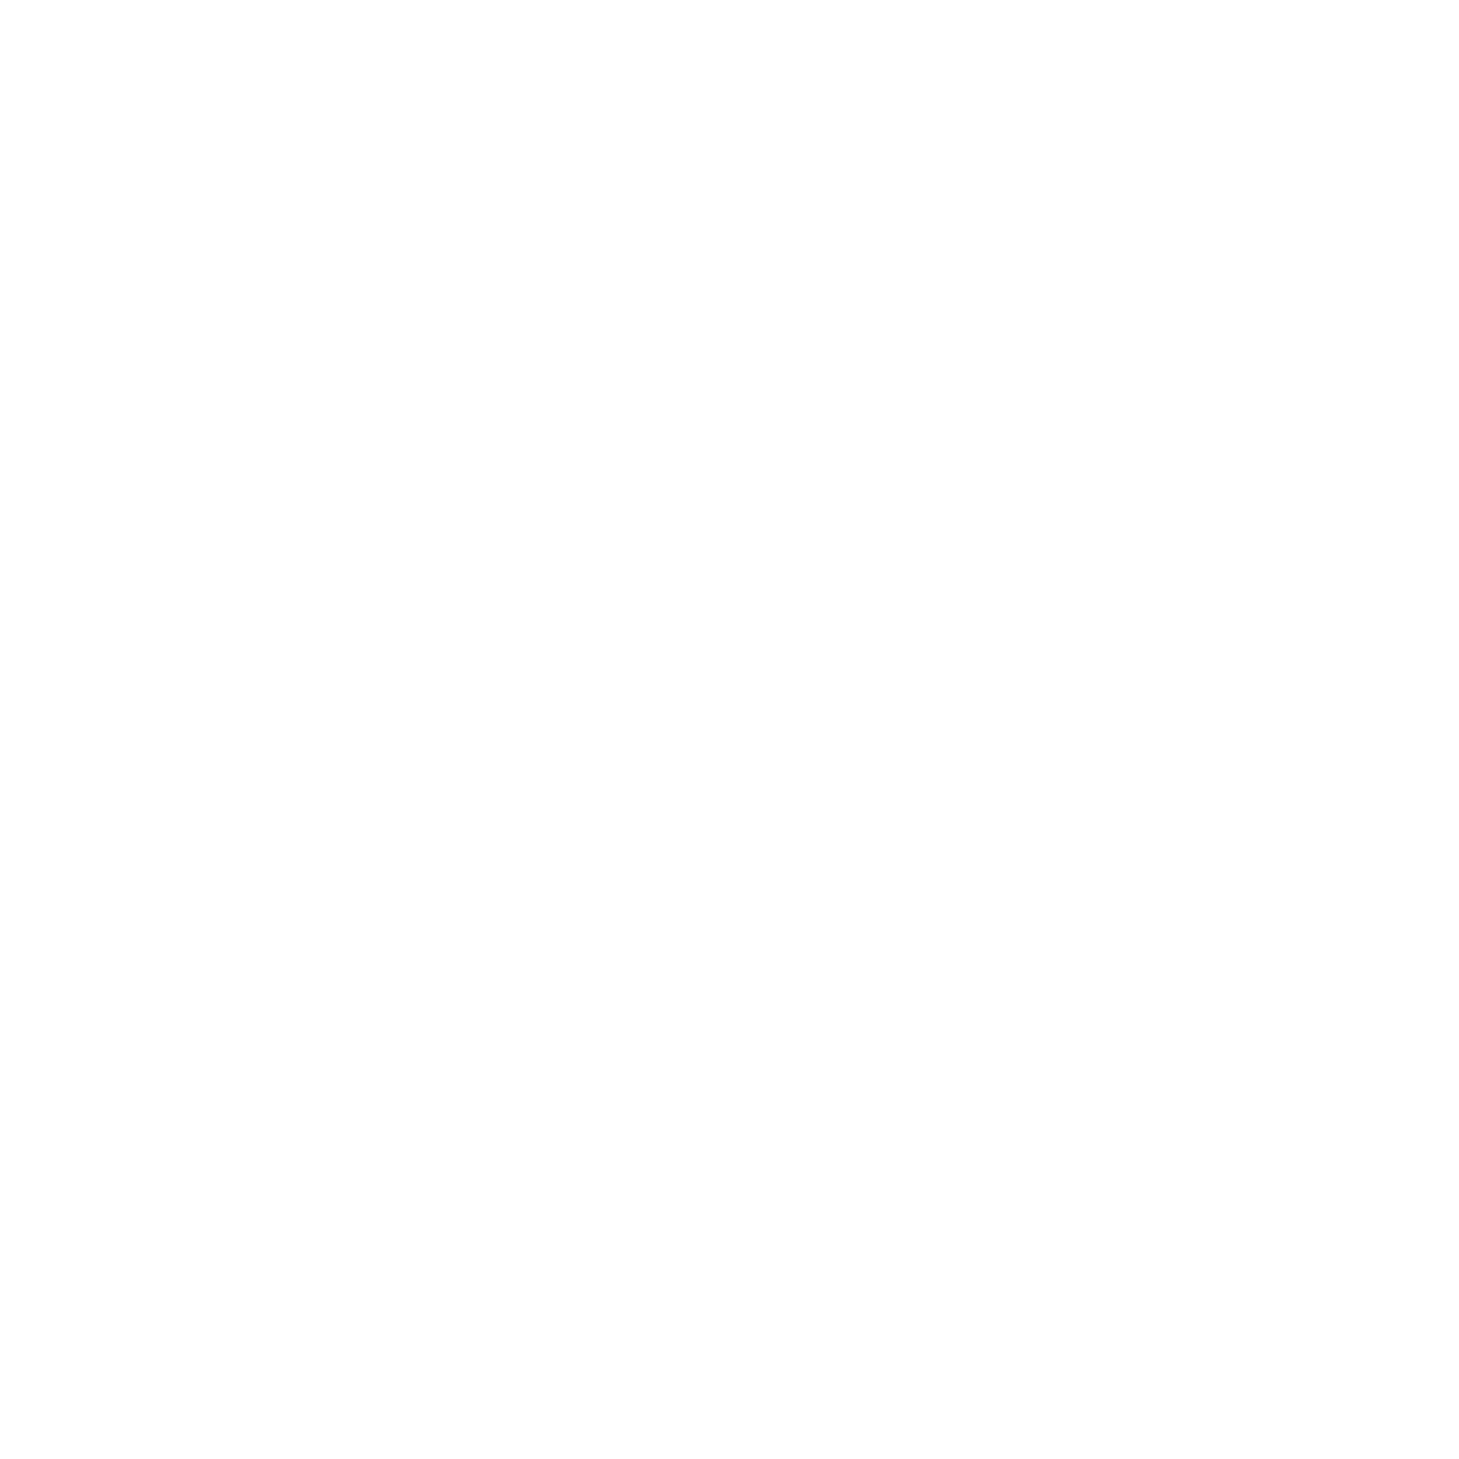 Whole Foods Market's logo